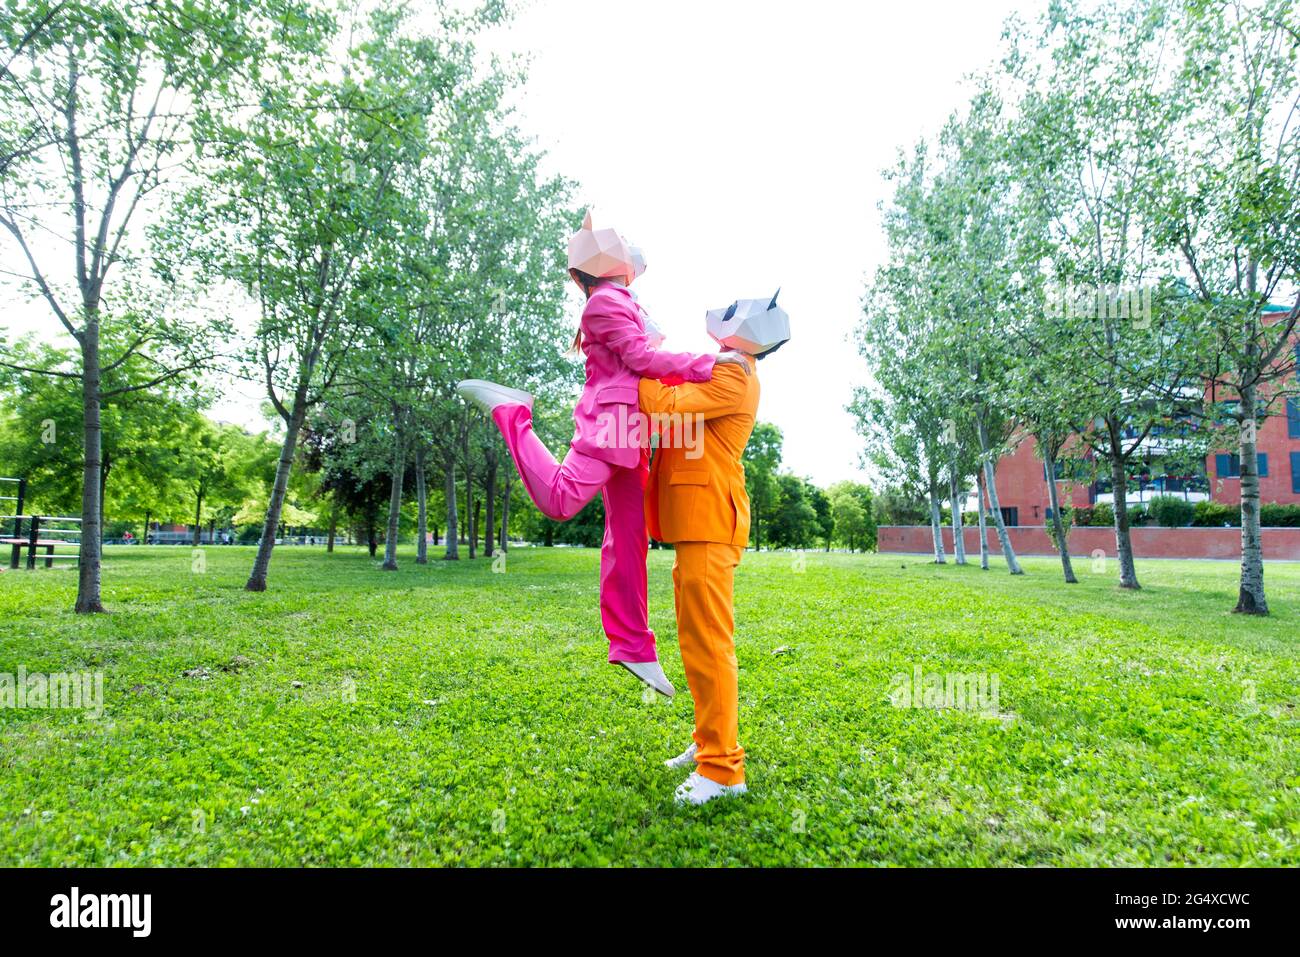 Couples adultes portant des costumes et des masques d'animaux vibrants jouant dans un parc public Banque D'Images